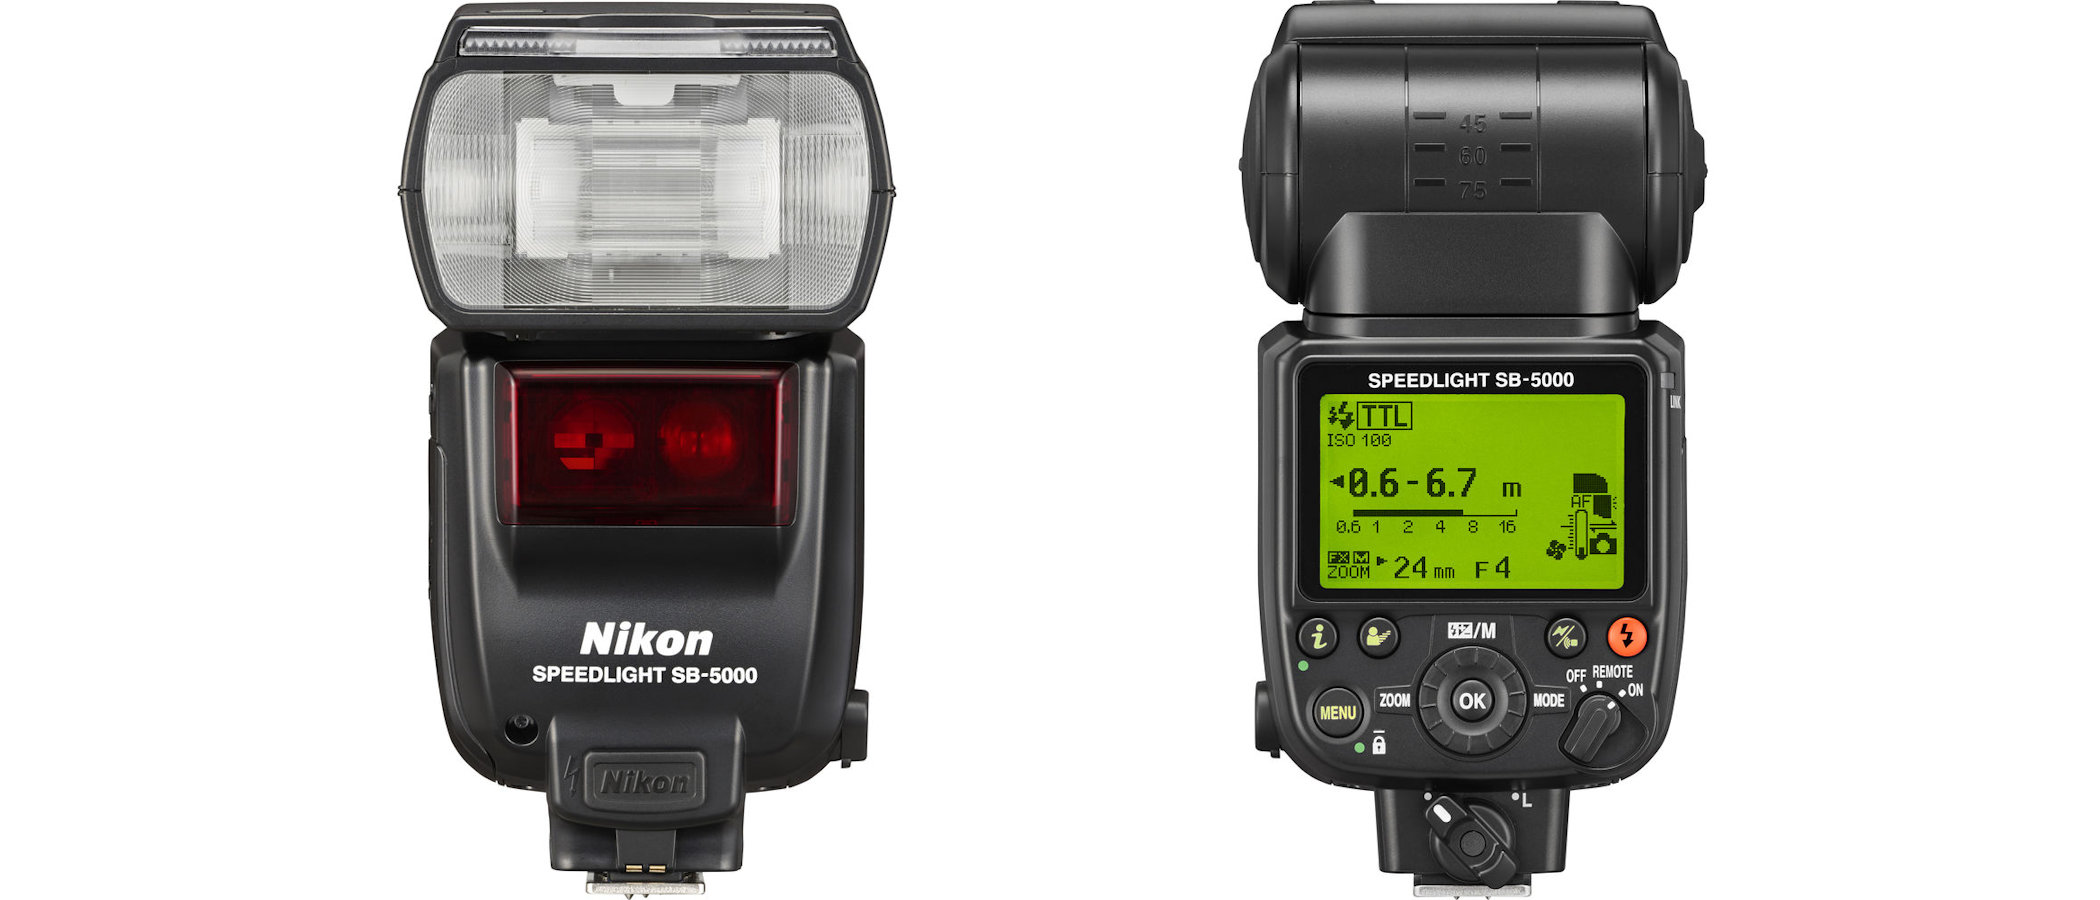 Nikon Speedlight SB-5000 review | Digital Camera World